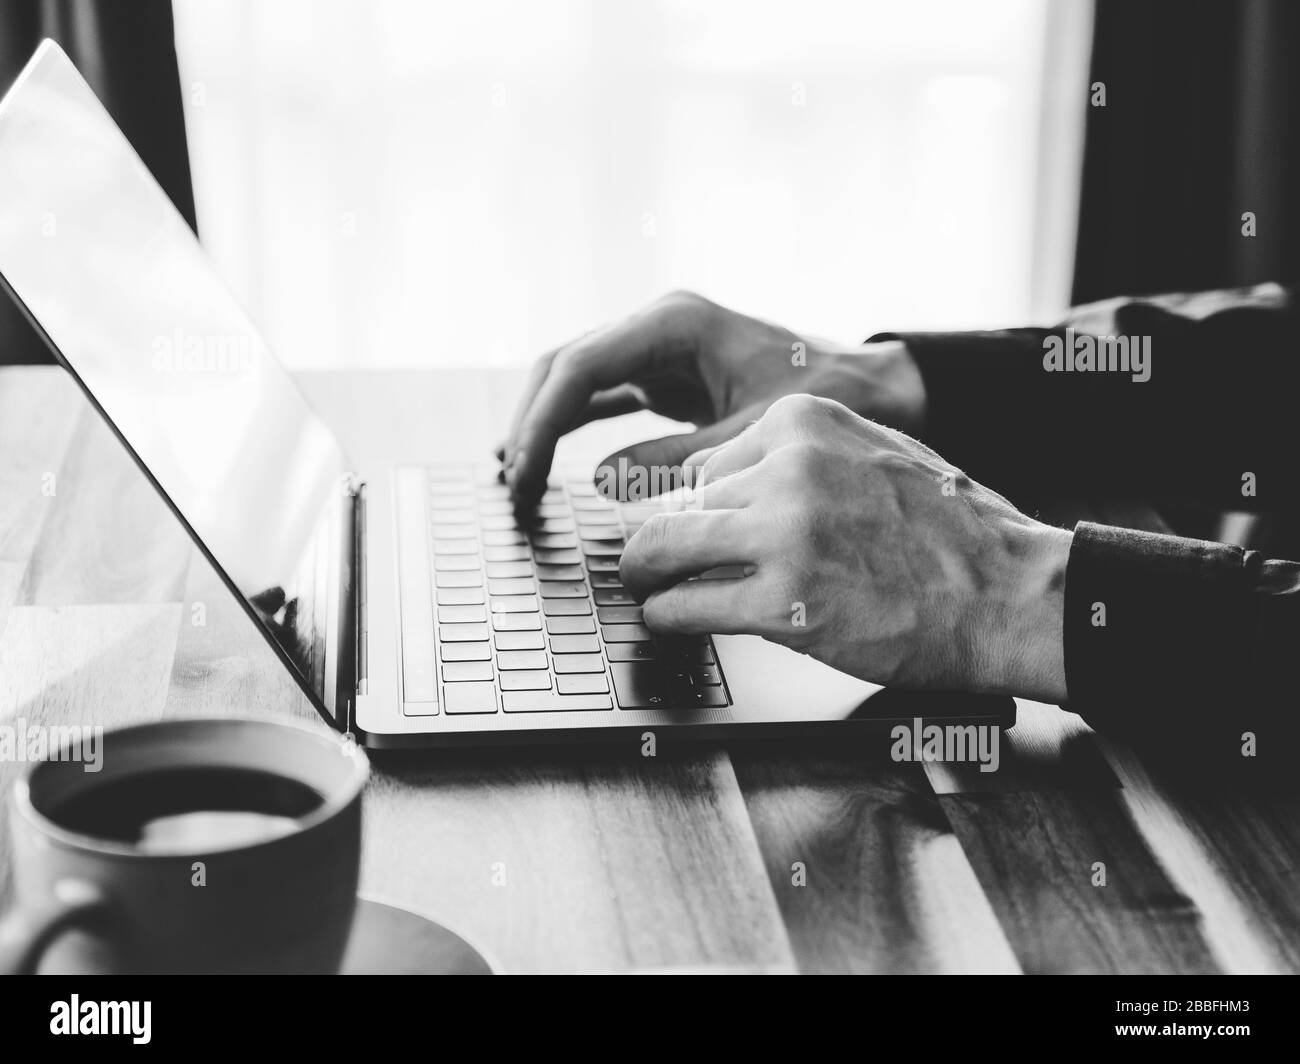 Un homme est en train de taper sur un clavier d'ordinateur portable. Concept de travail à domicile, photo en noir et blanc. Banque D'Images